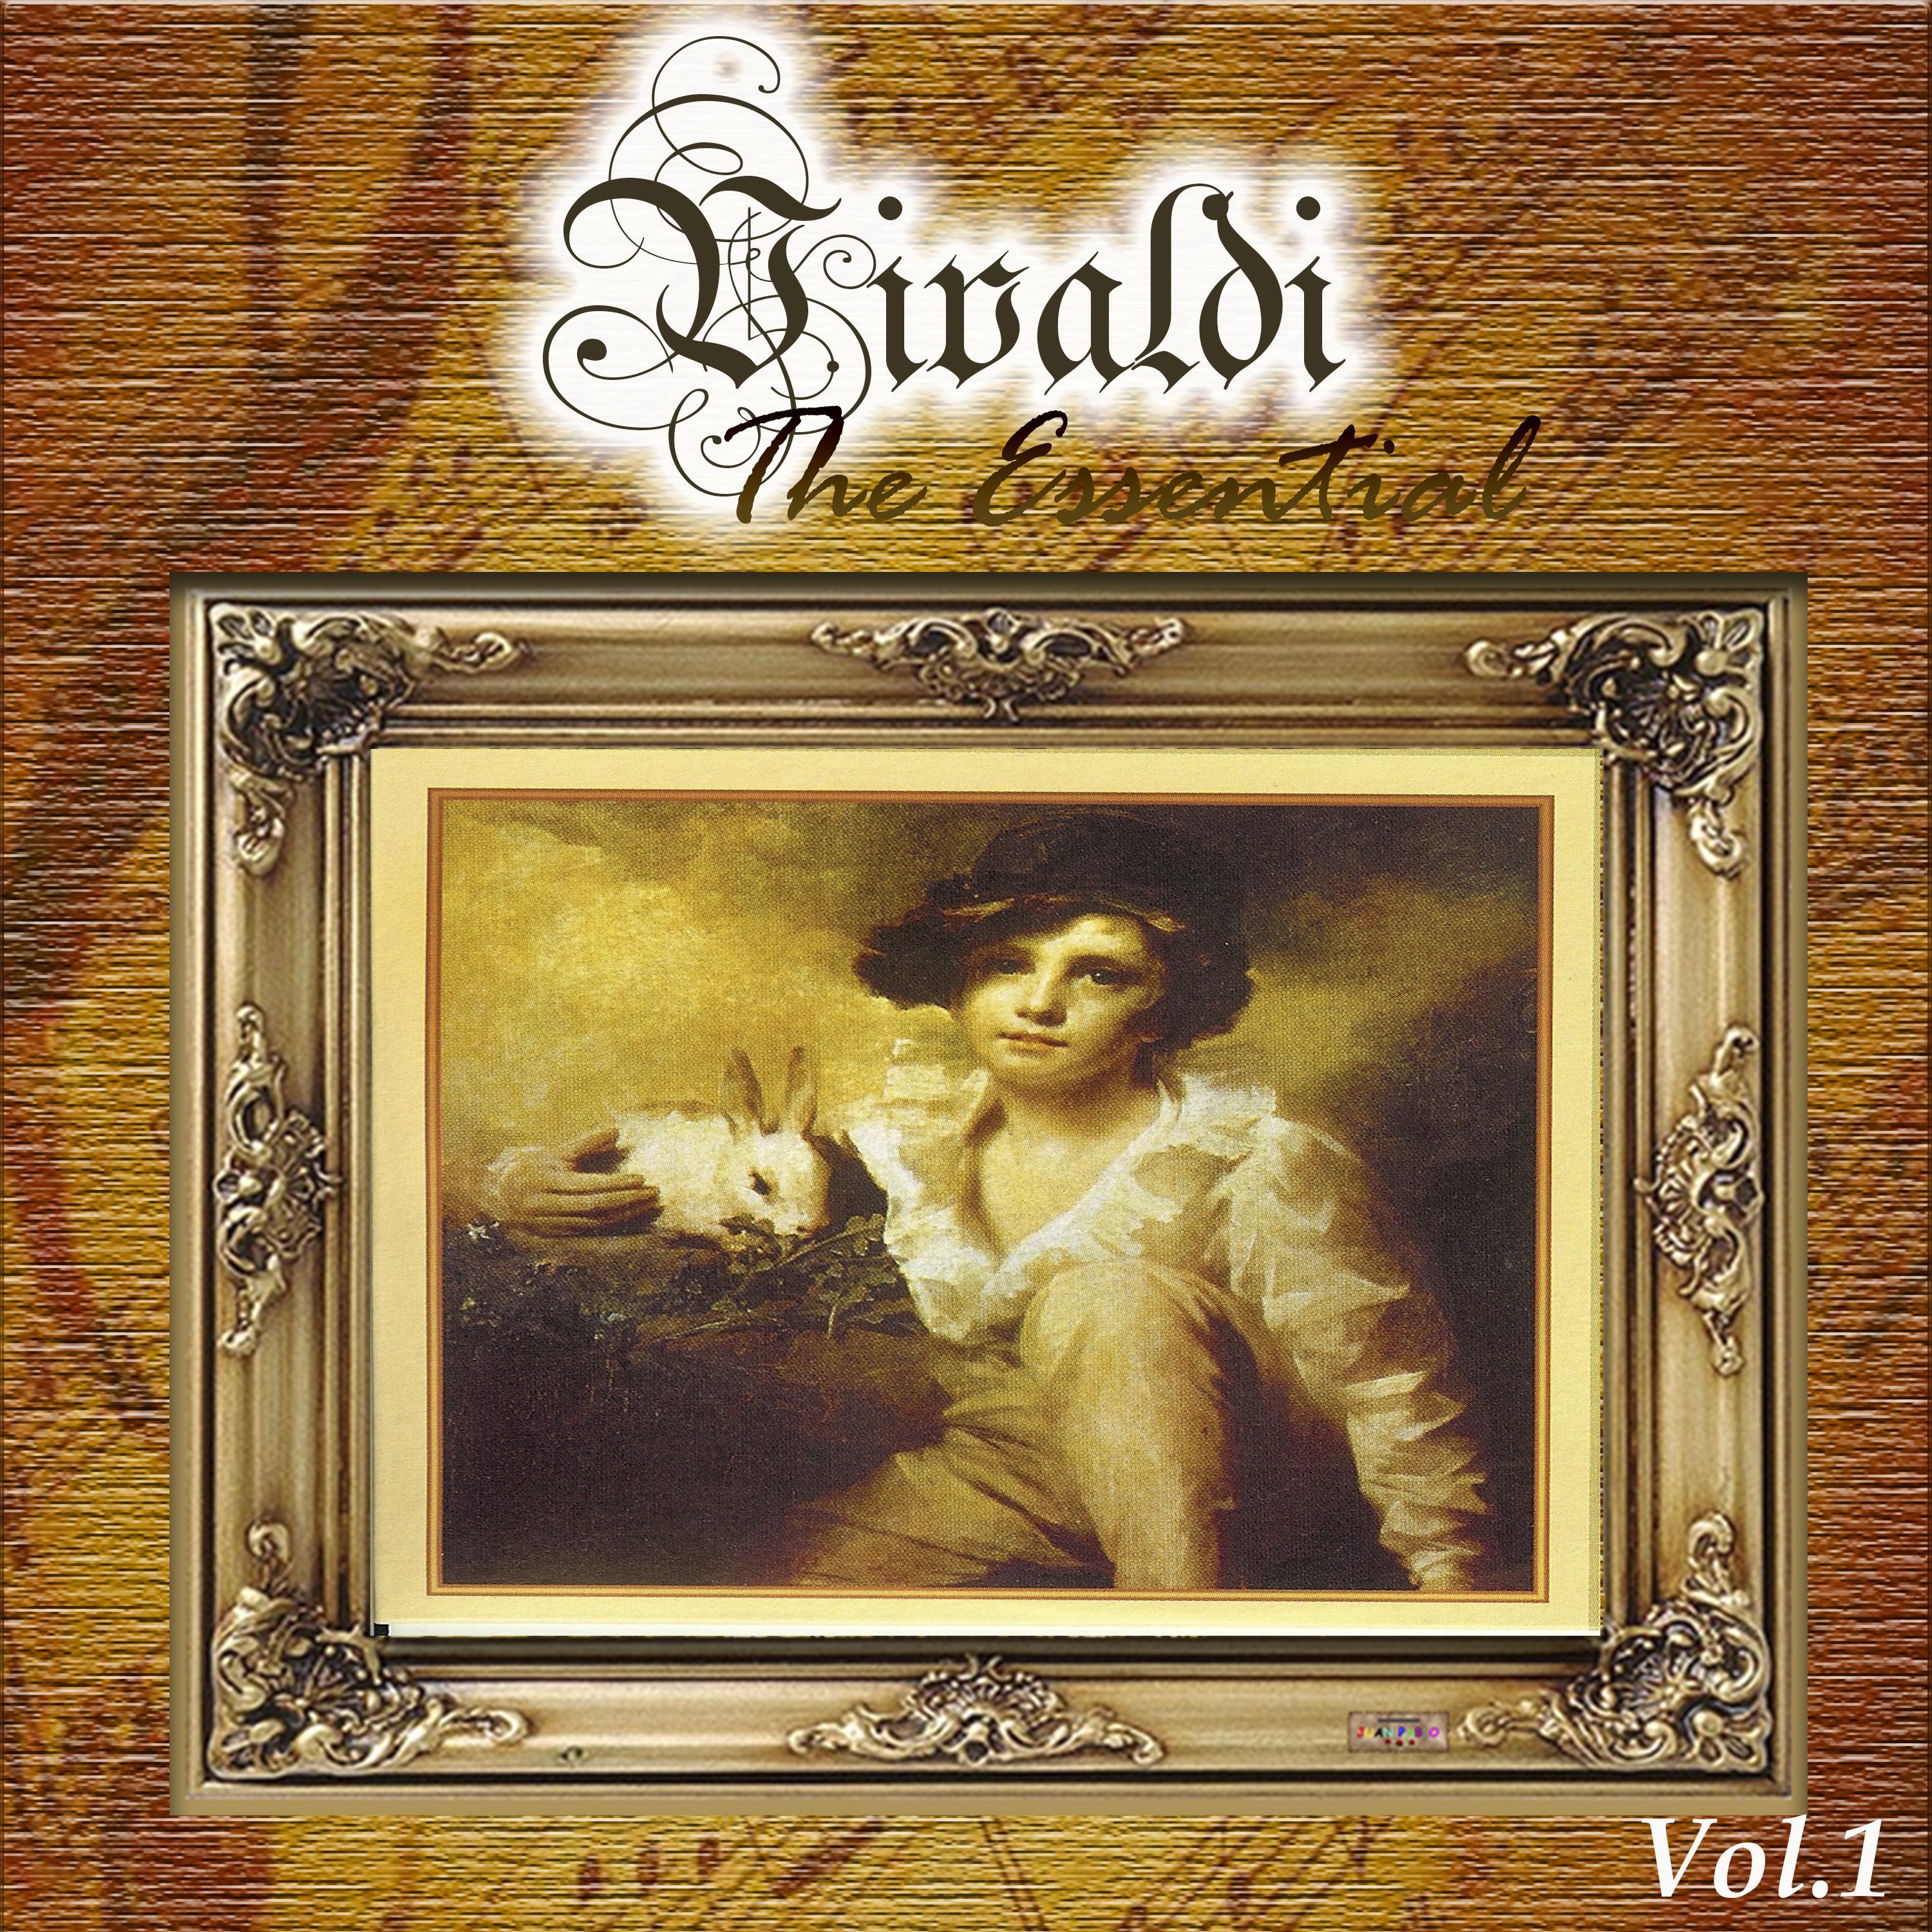 Vivaldi - The Essential, Vol. 1